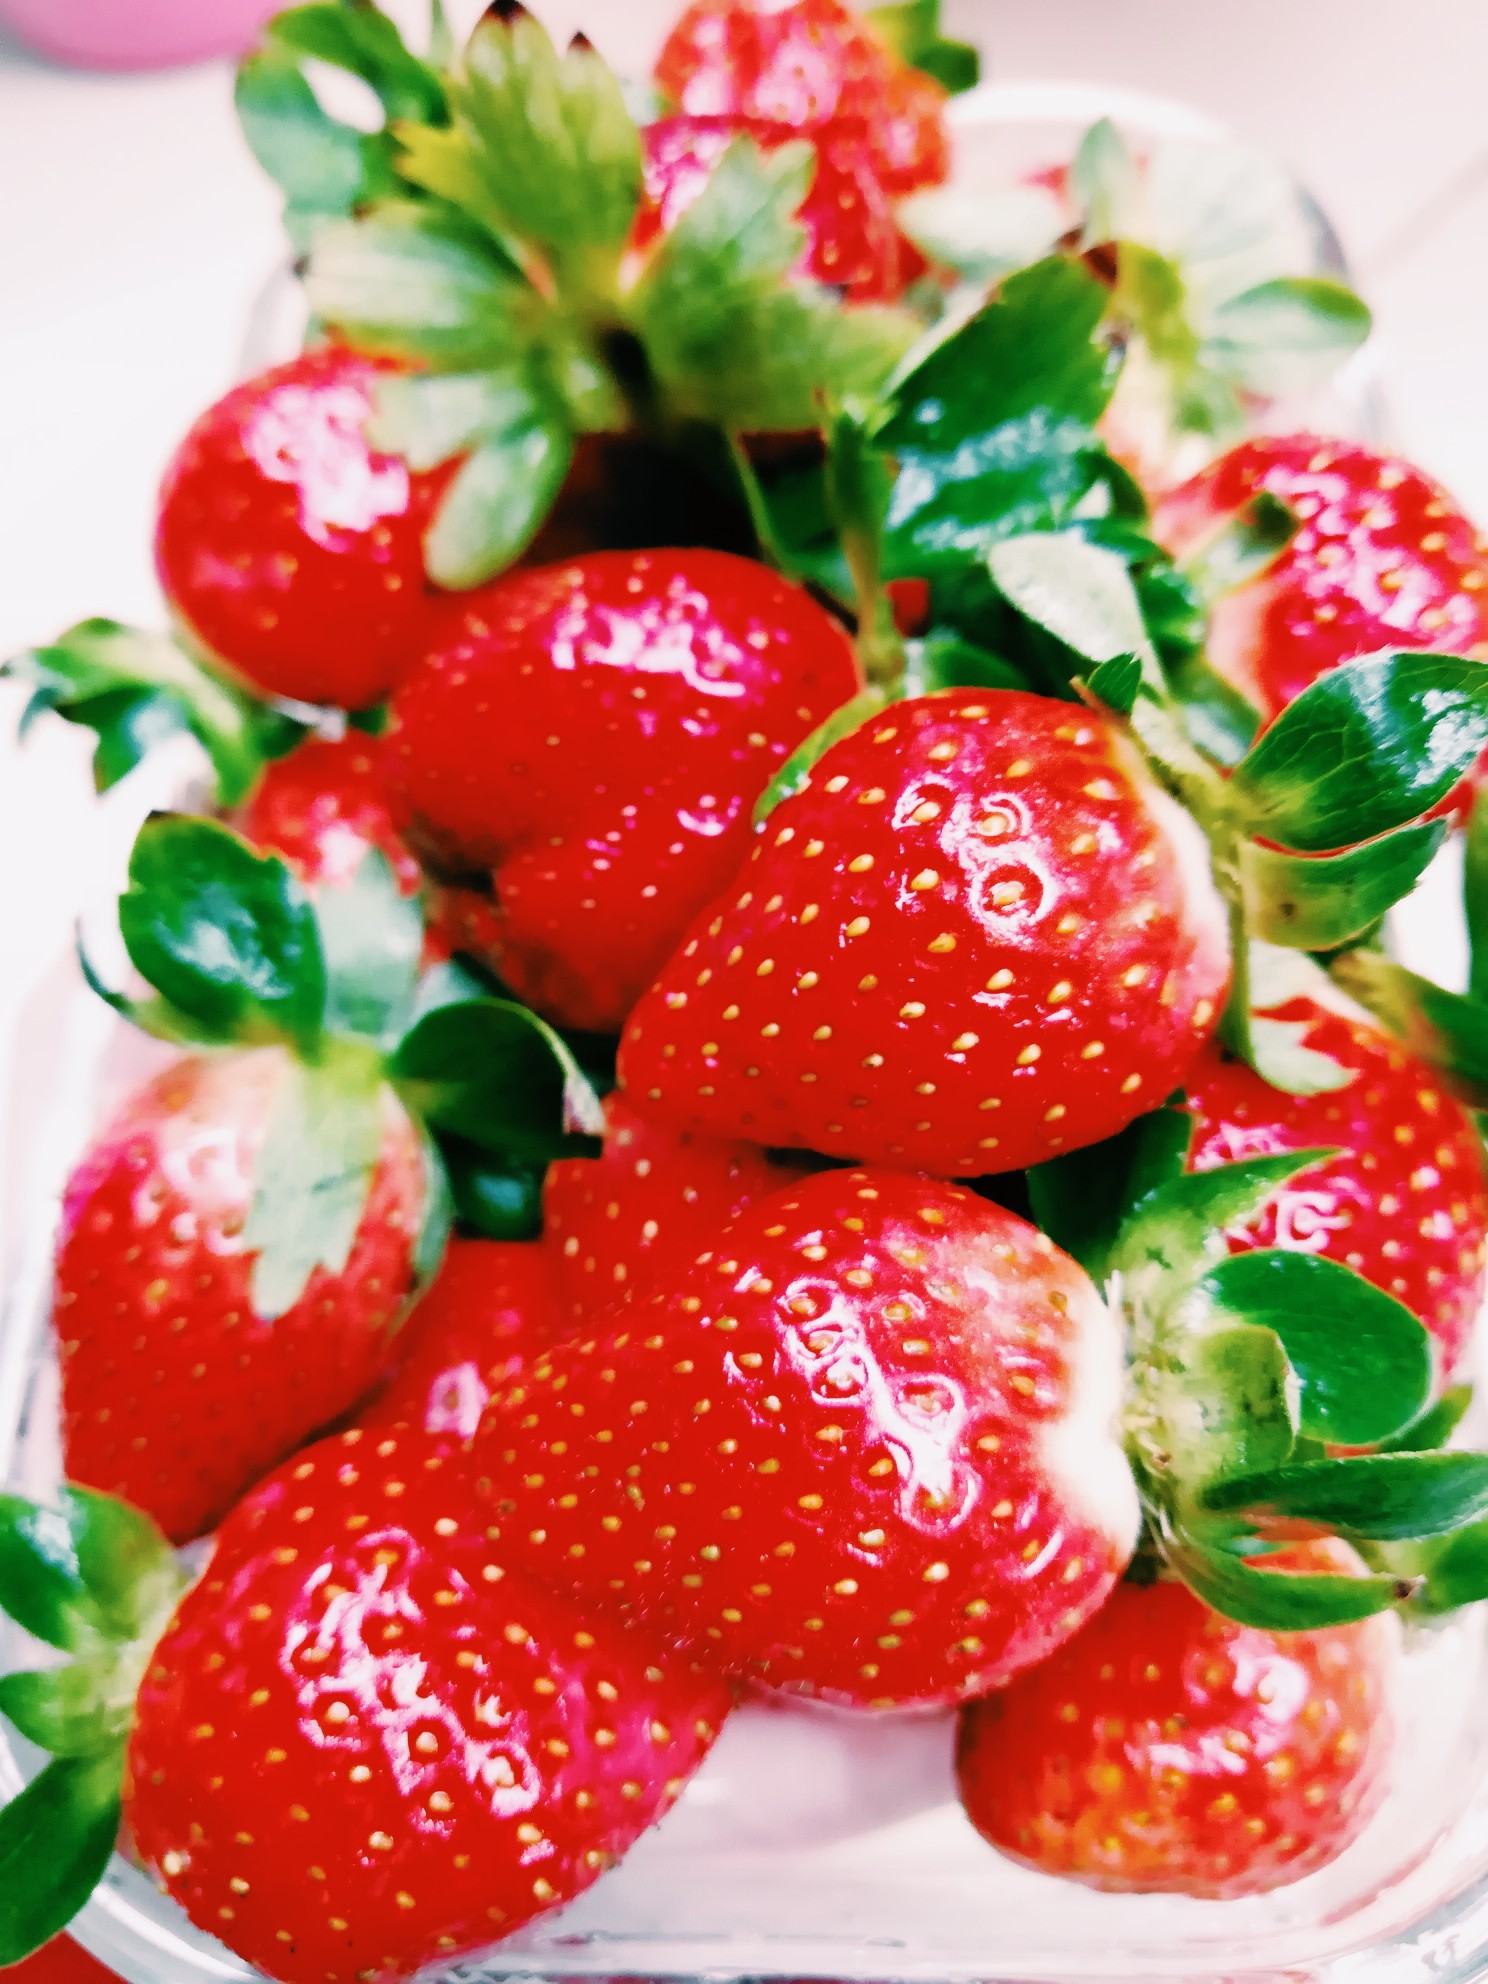 草莓的照片 唯美图片